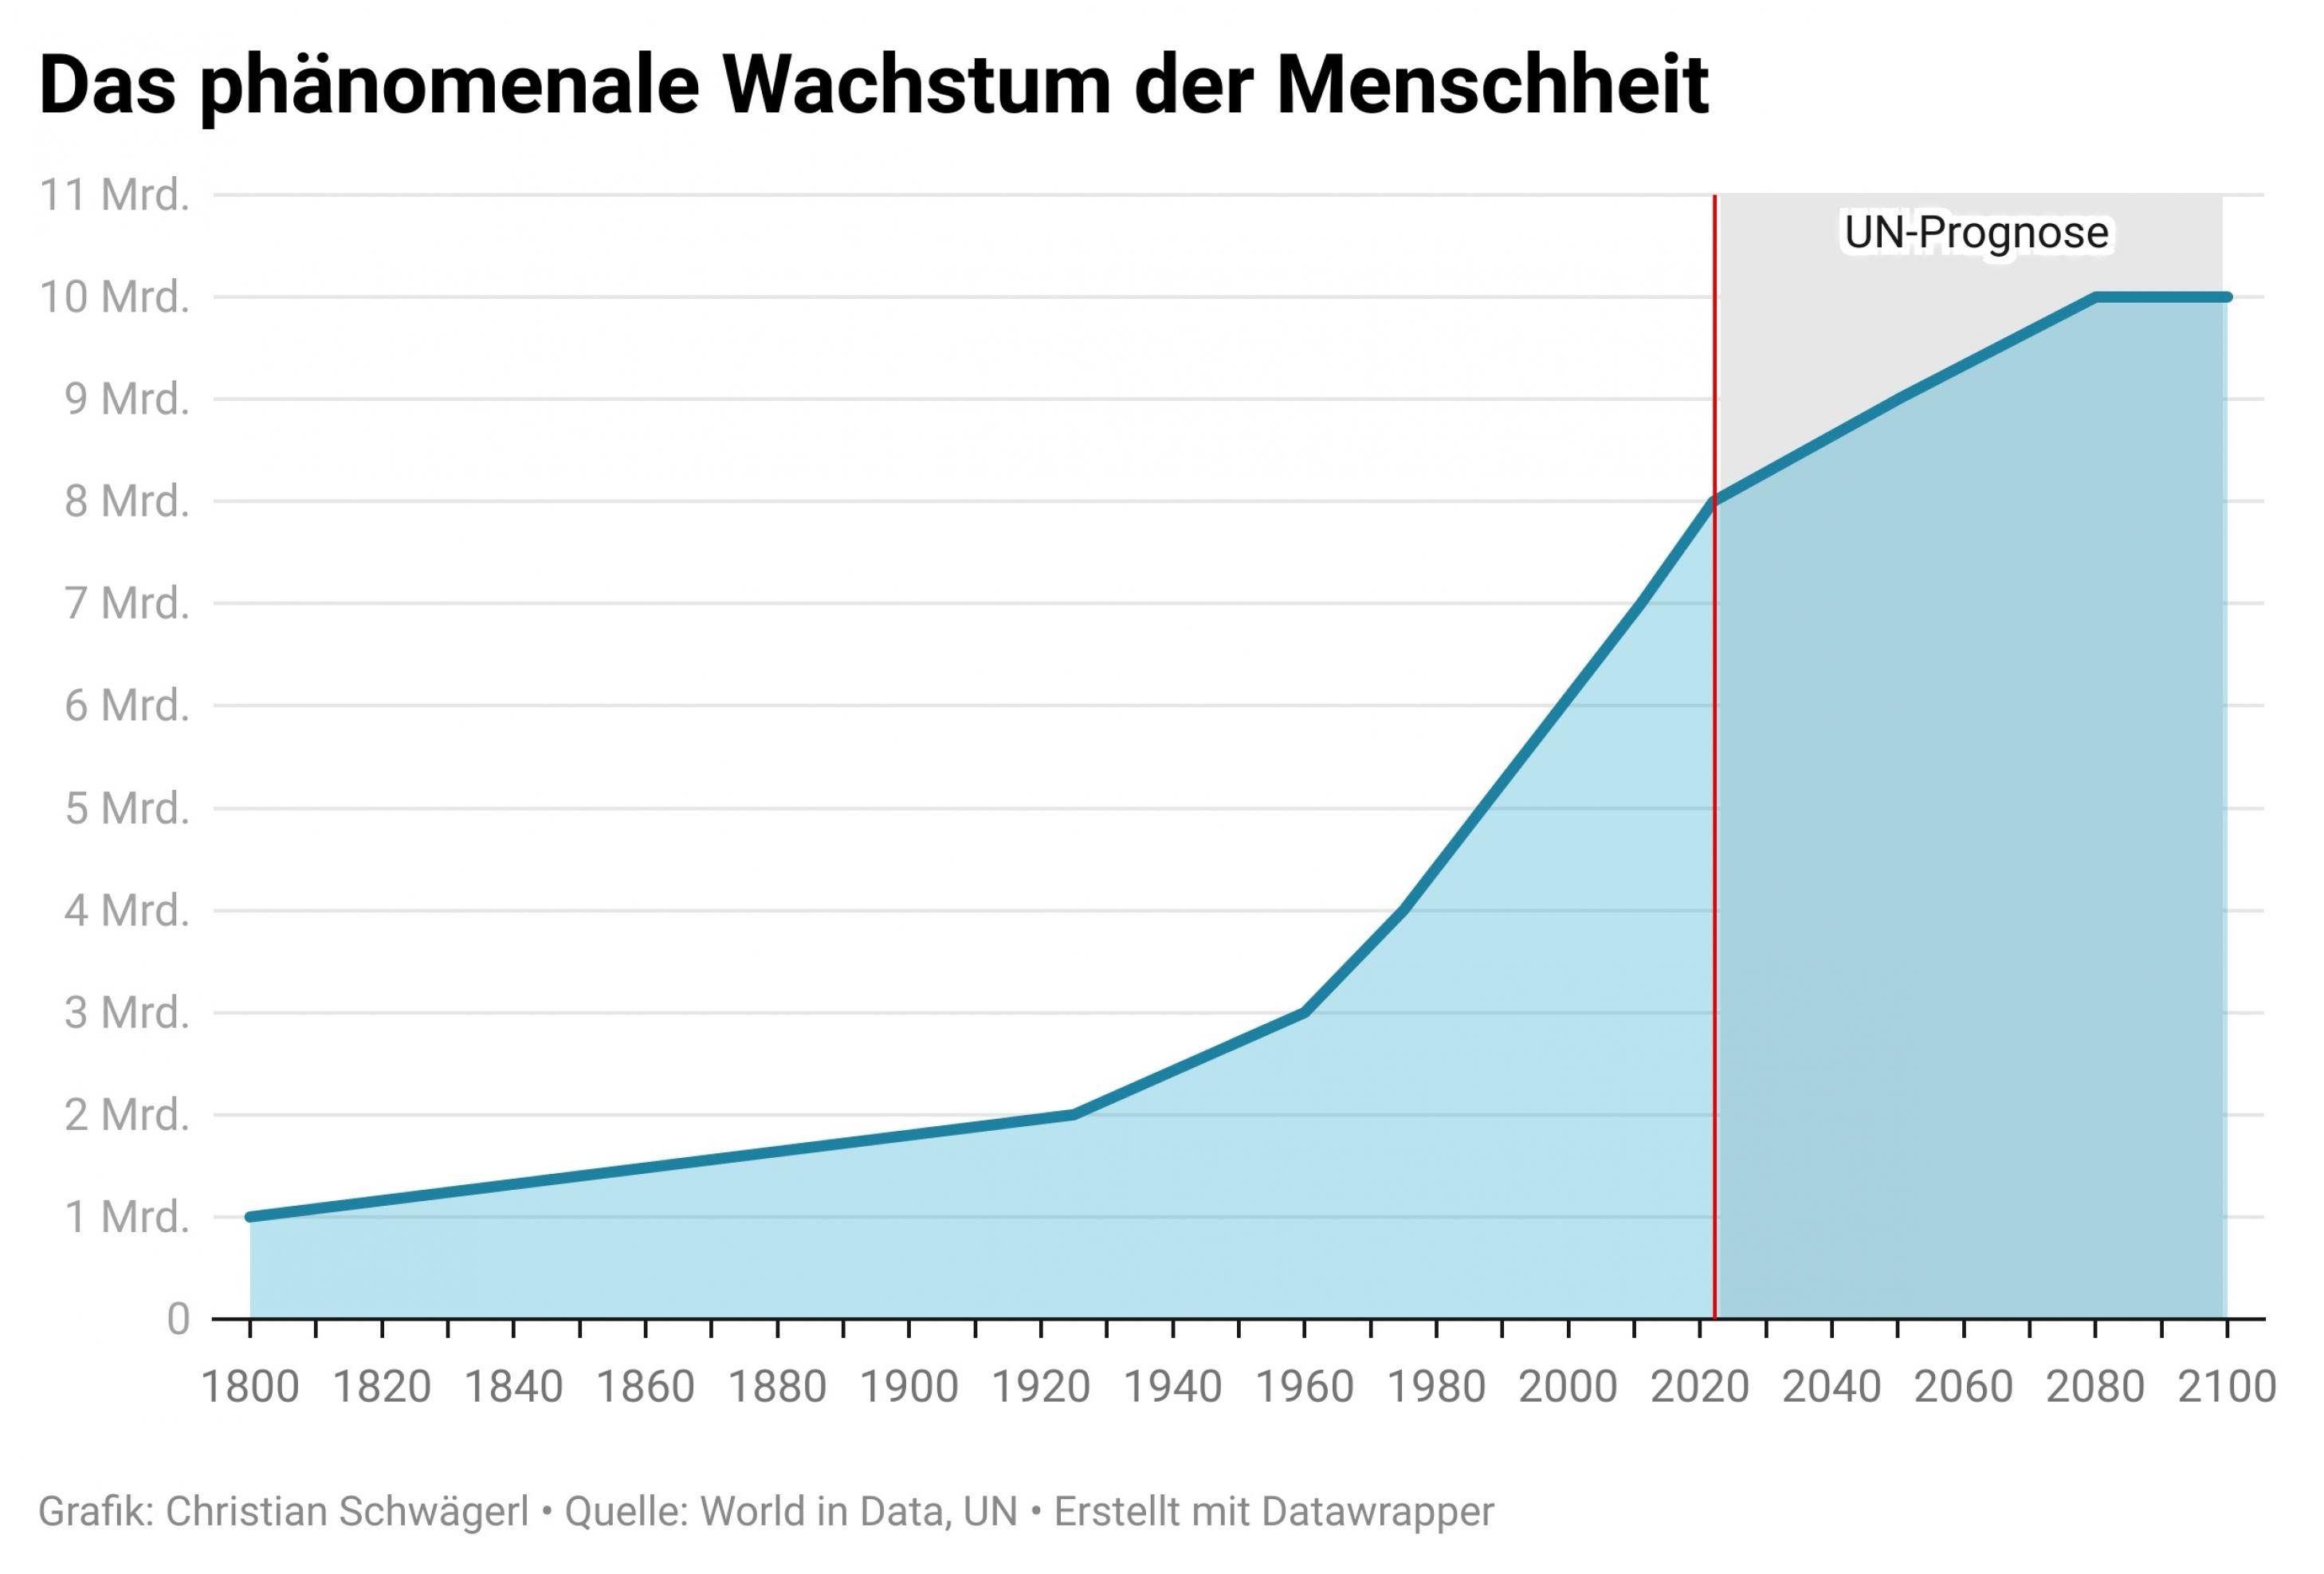 Das phänomenale Wachstum der Menschheit: 1804 1000000000, 1975 4000000000, 2022 8000000000, Prognose 2080 10000000000